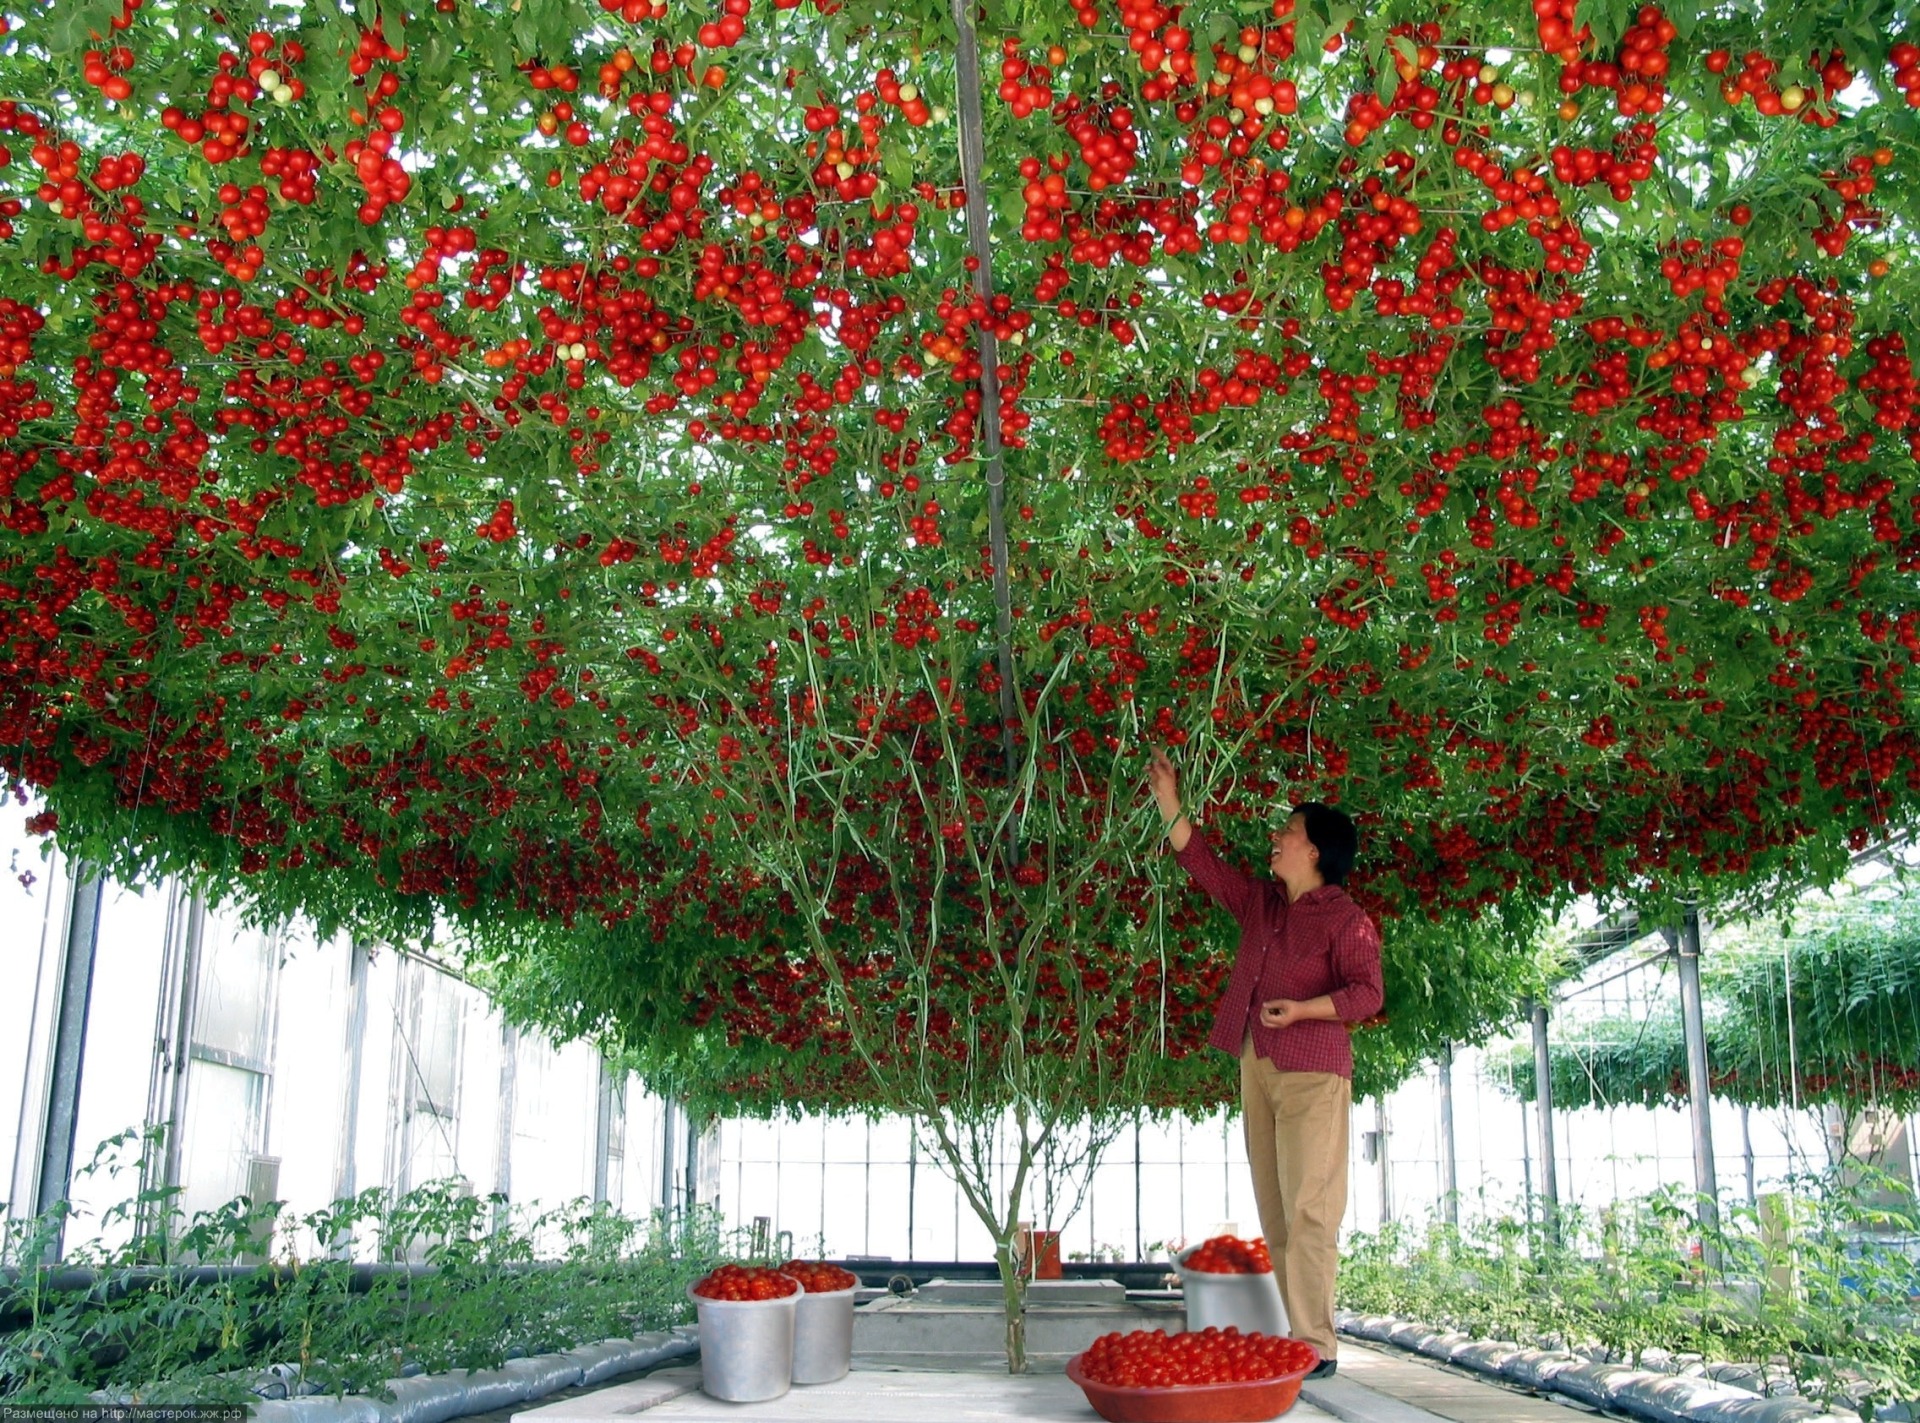 Річний урожай Спрут F1 дає просто фантастичний - близько 14 тисяч томатів, загальна вага яких дорівнює 1,5 тоннам